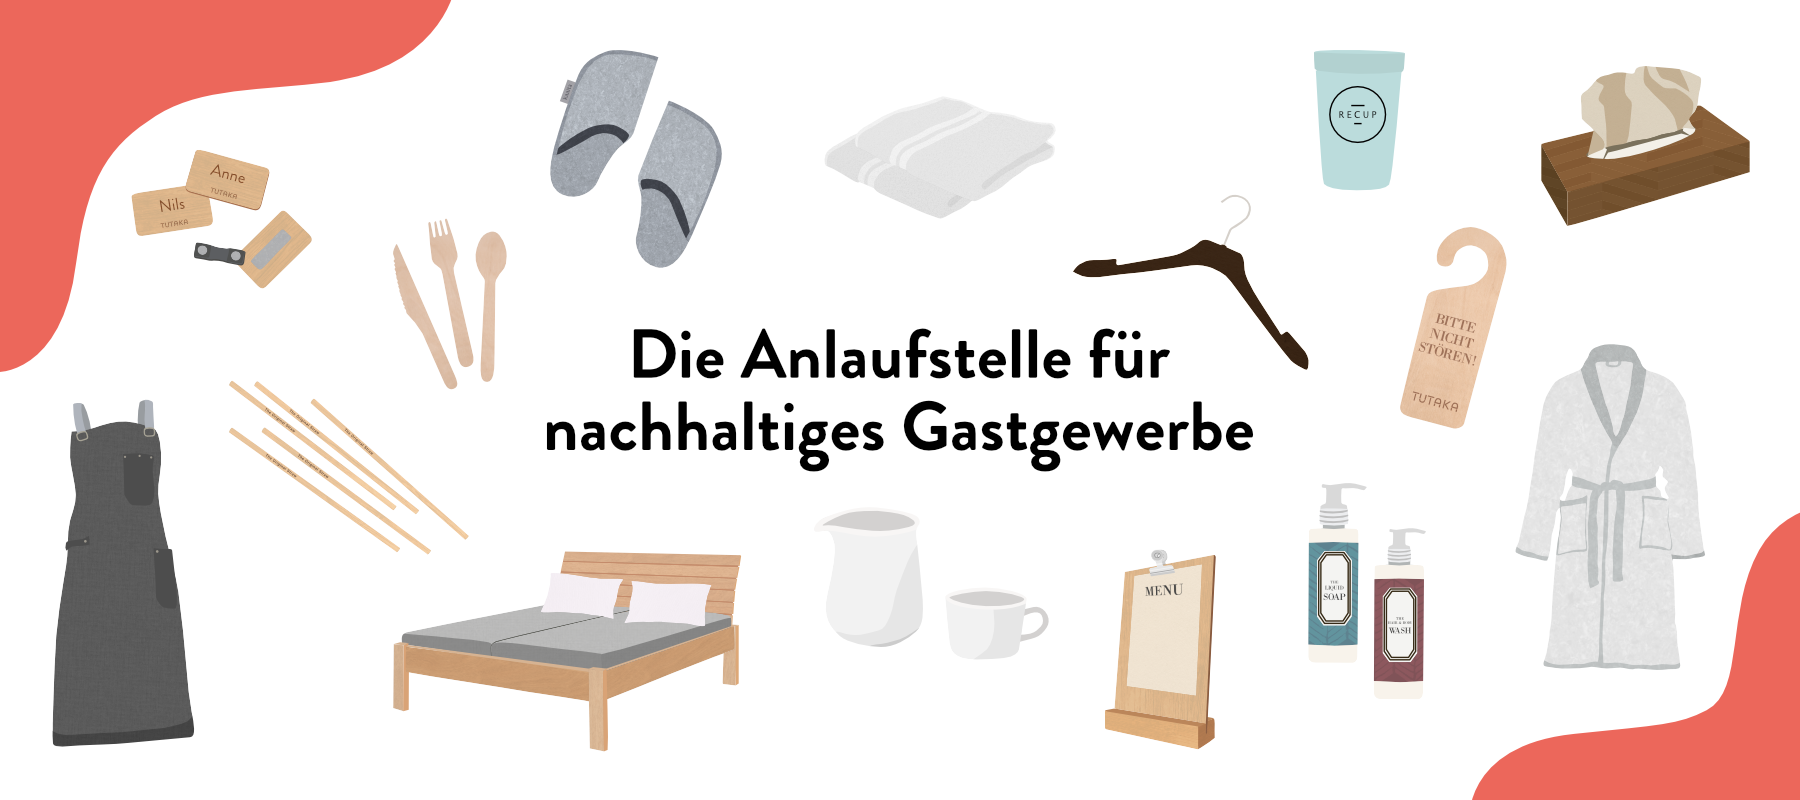 Tutaka-online-verzeichnis-illustration-collection-gastgewerbe-header